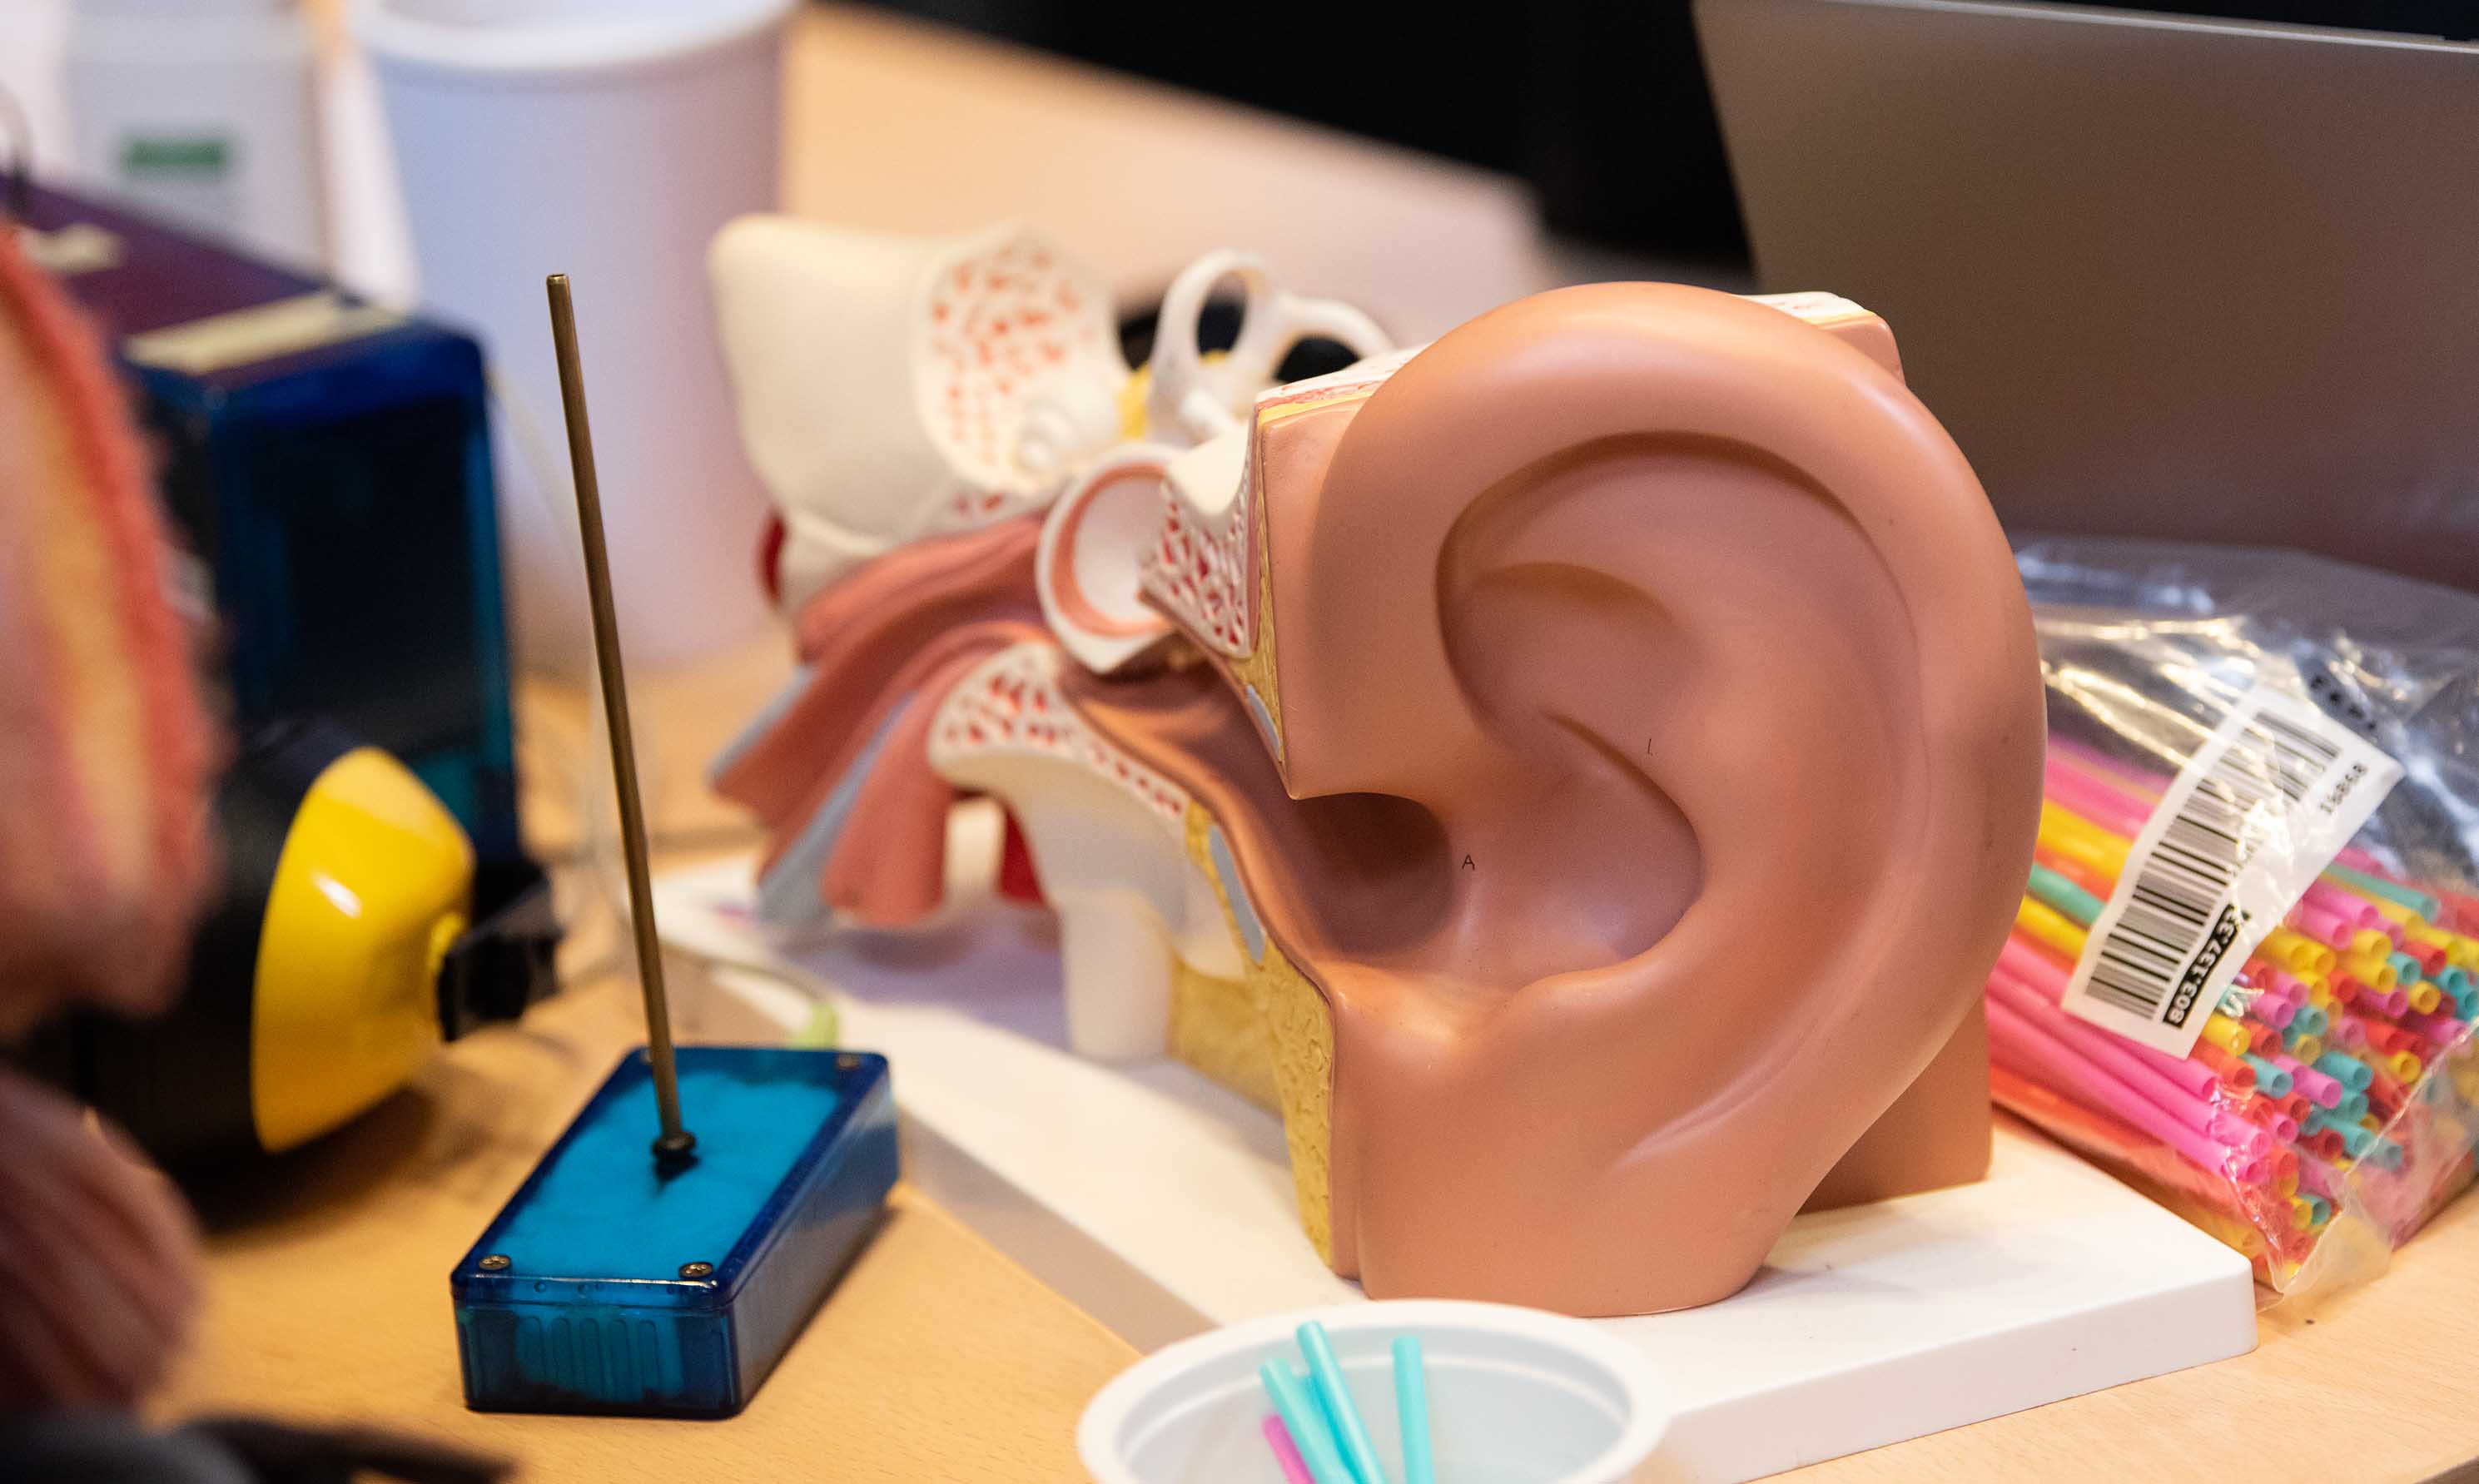 Human ear exhibition (replica)